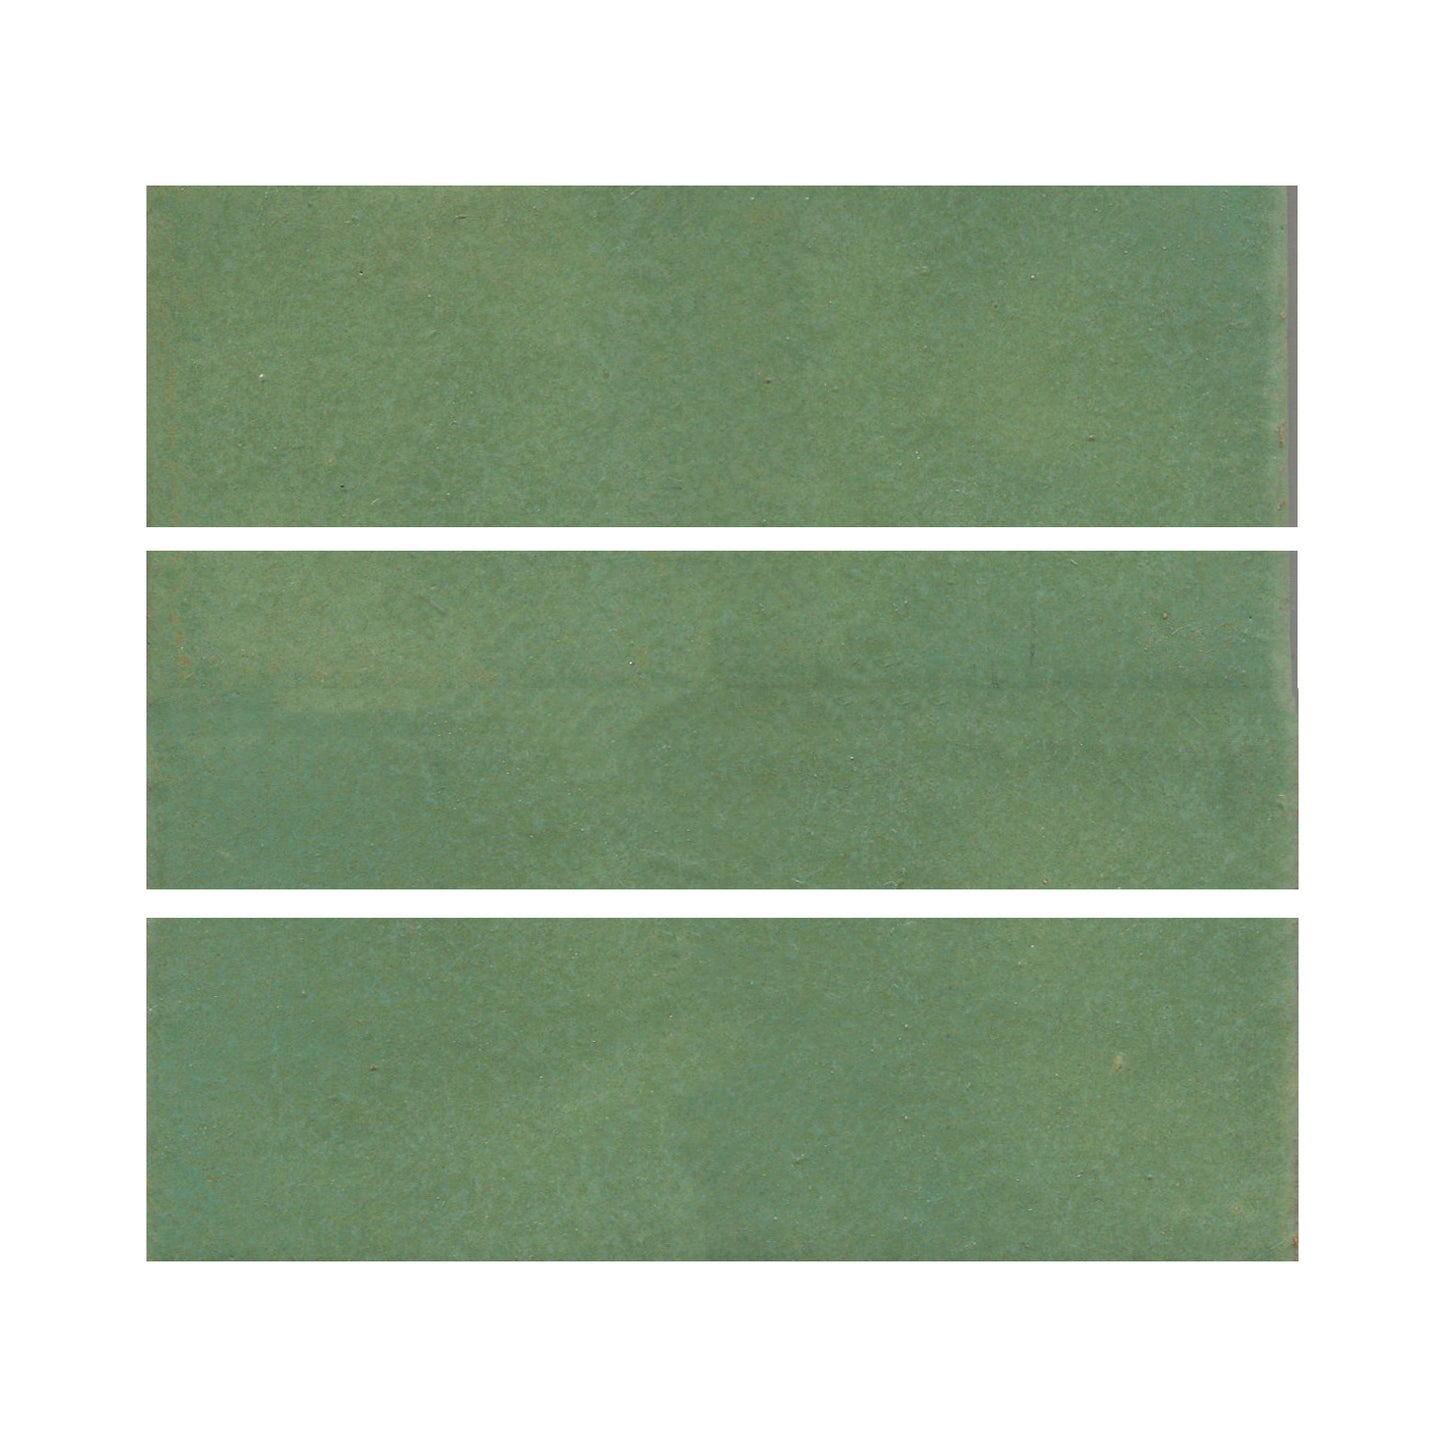 Wasabi green 3x8 field tile